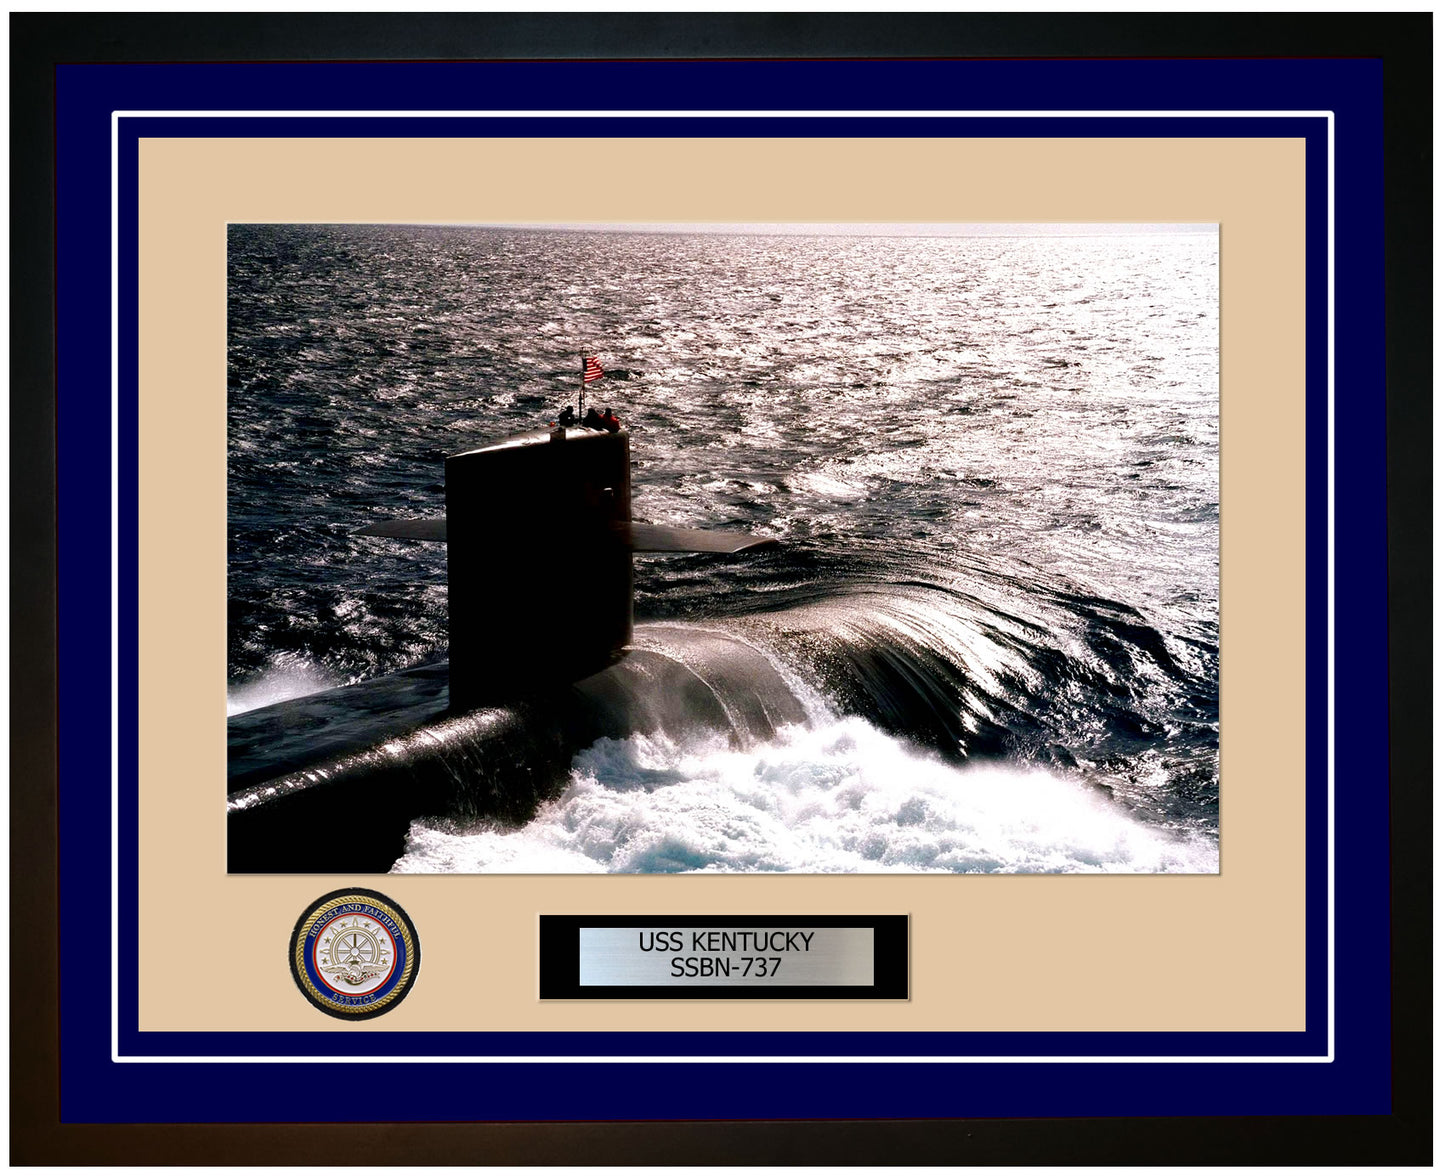 USS Kentucky SSBN-737 Framed Navy Ship Photo Blue